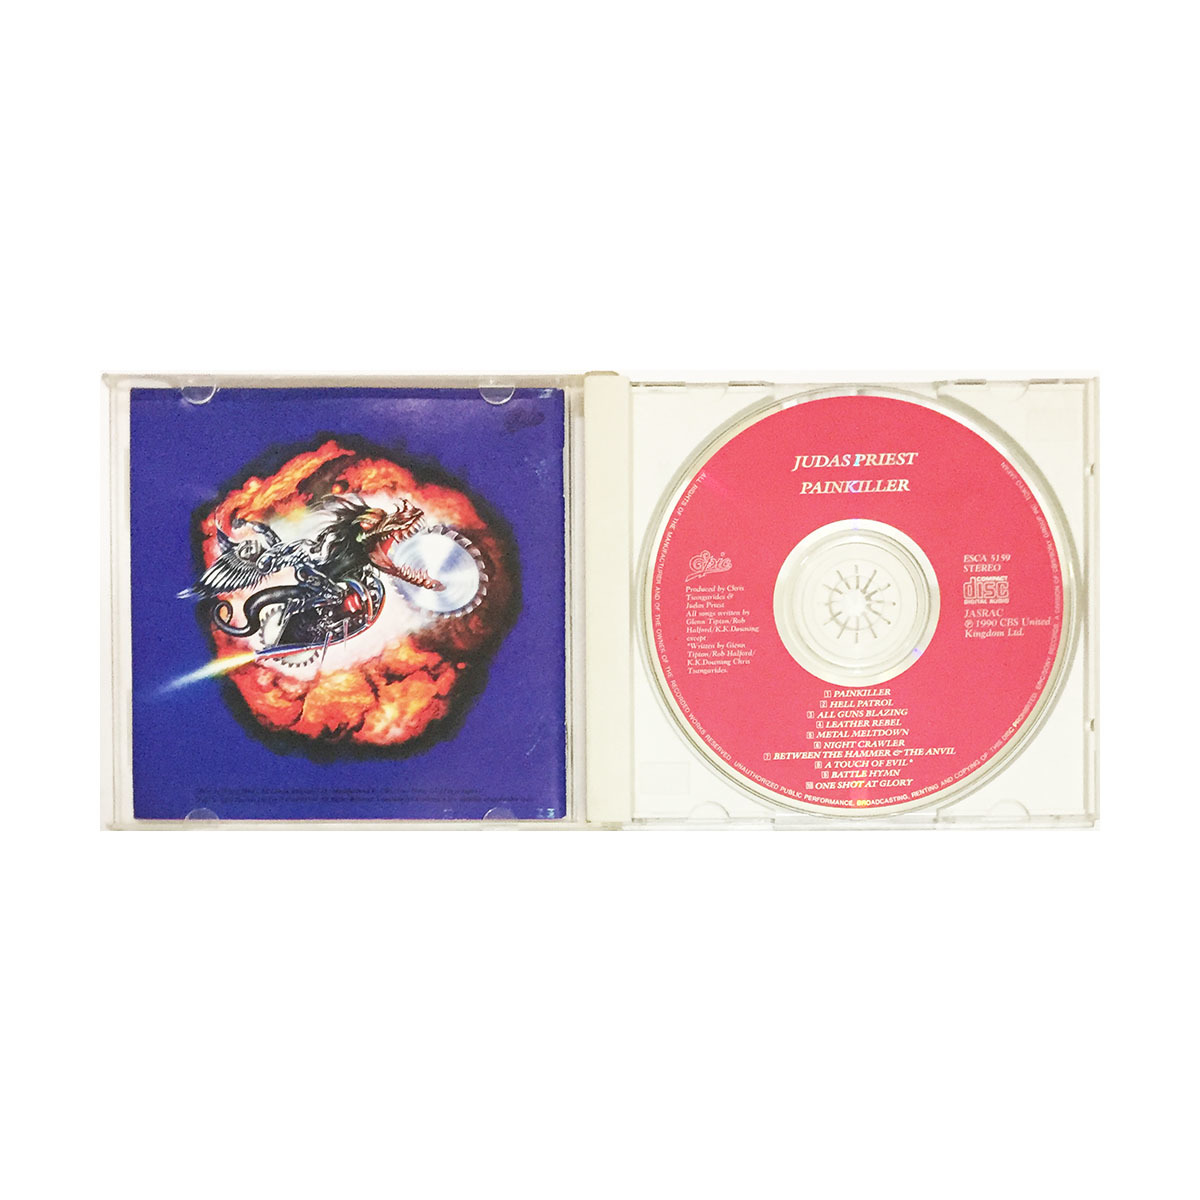 洋楽 CD ジューダス プリースト ペインキラー JUDAS PRIEST Pain Killer ヘヴィメタル ハードロック 名盤 メタルゴッド ロブ ハルフォード